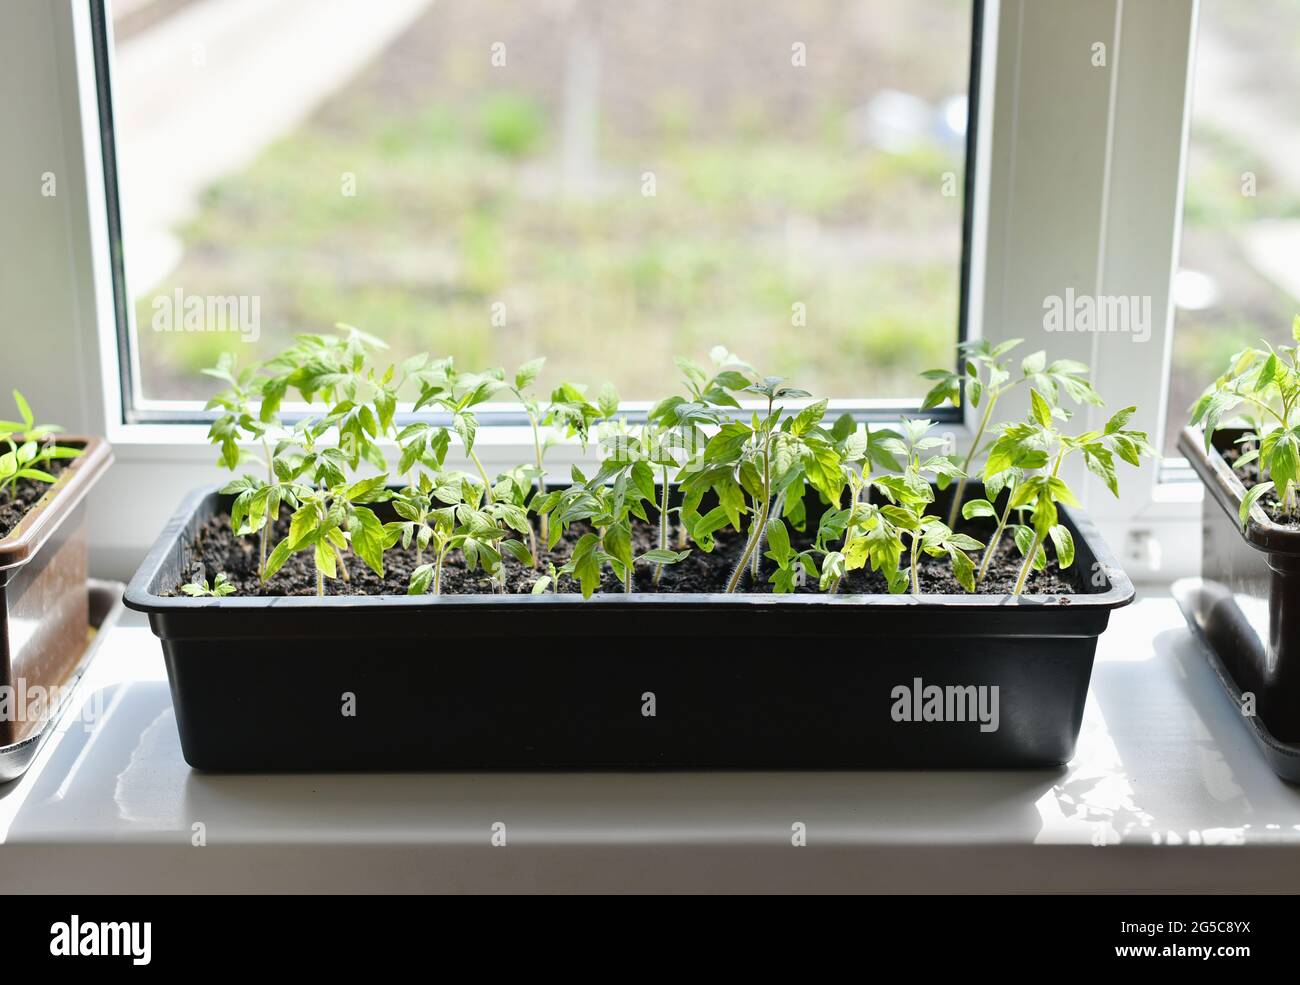 Coltivare verdure fatte in casa su un davanzale Foto Stock